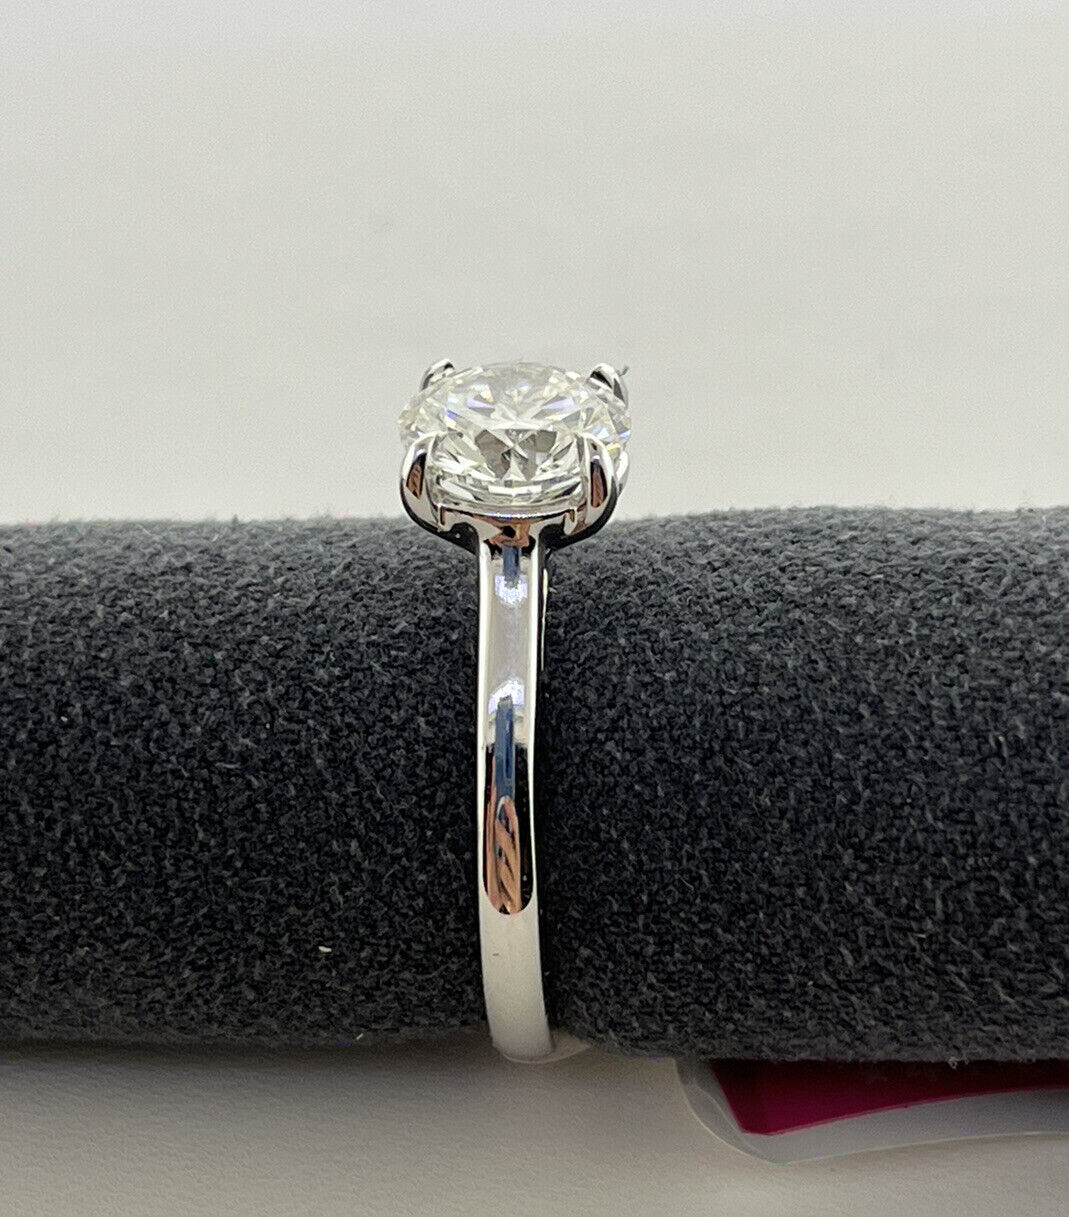 14k White Gold Ring 1.96 Carat Lab Grown Diamond Engagement Wedding Ring Size 7